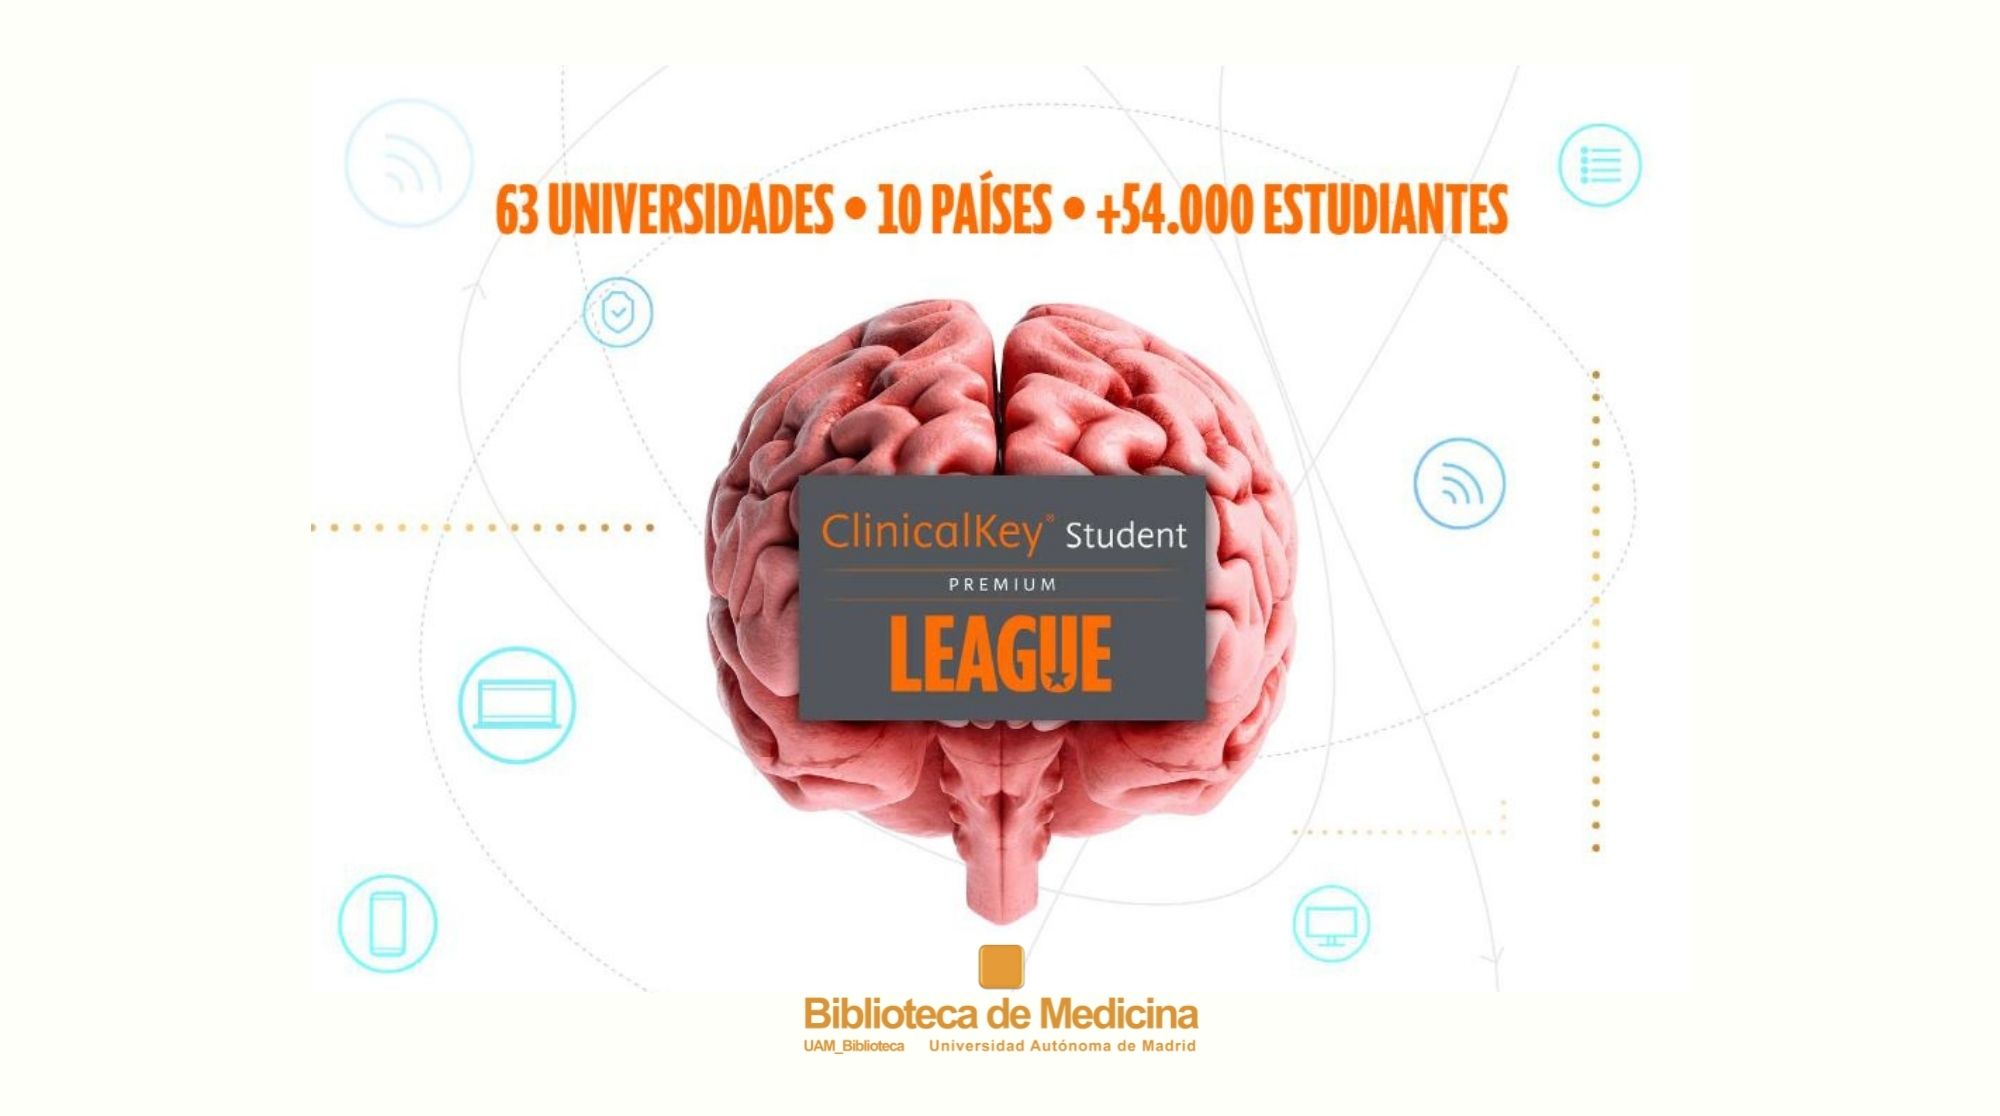 ClinicalKey Student Premium League